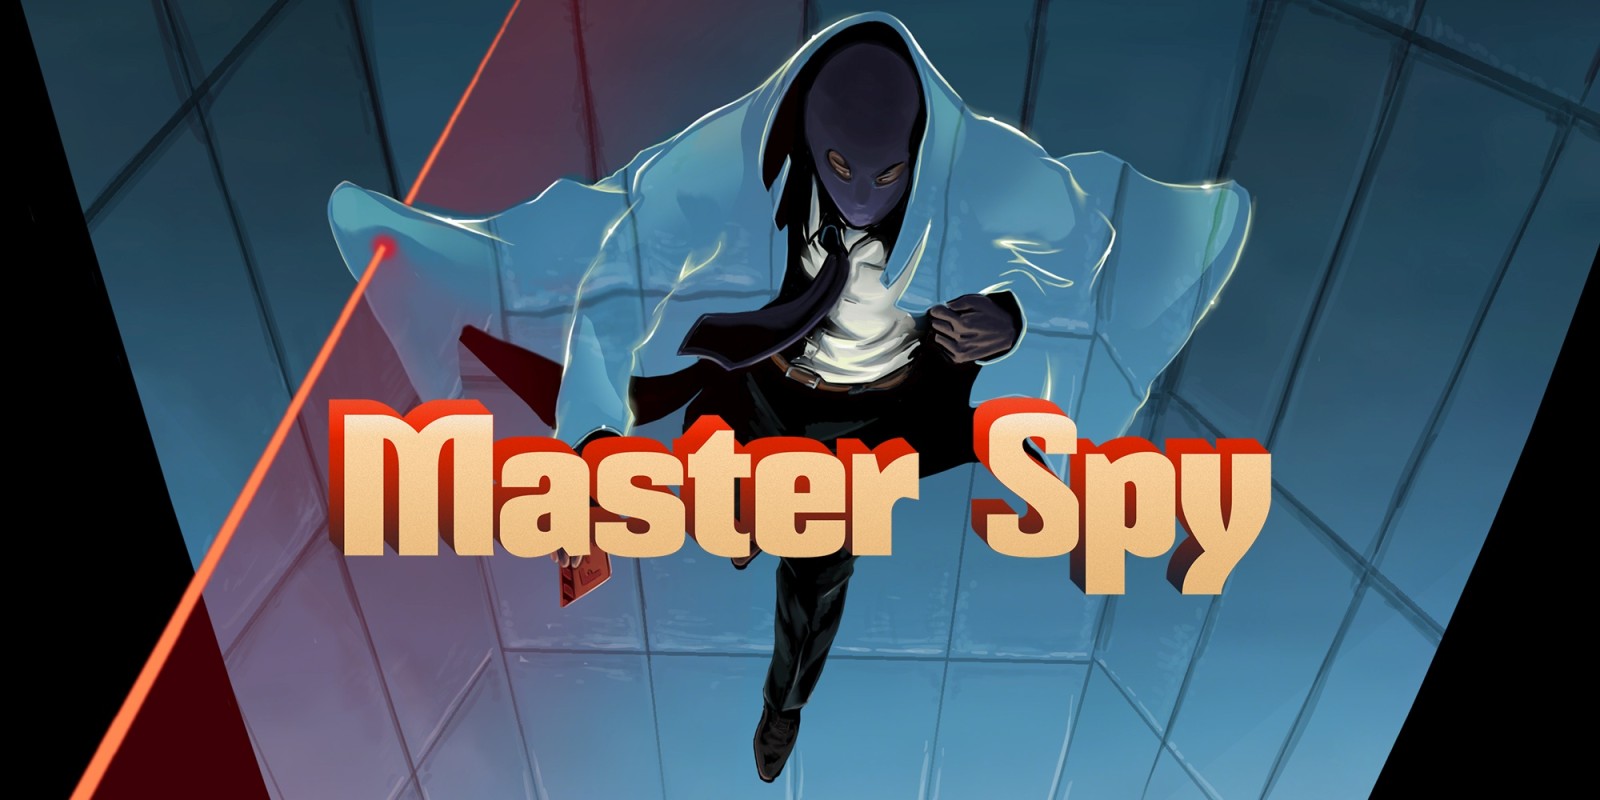 Master Spy